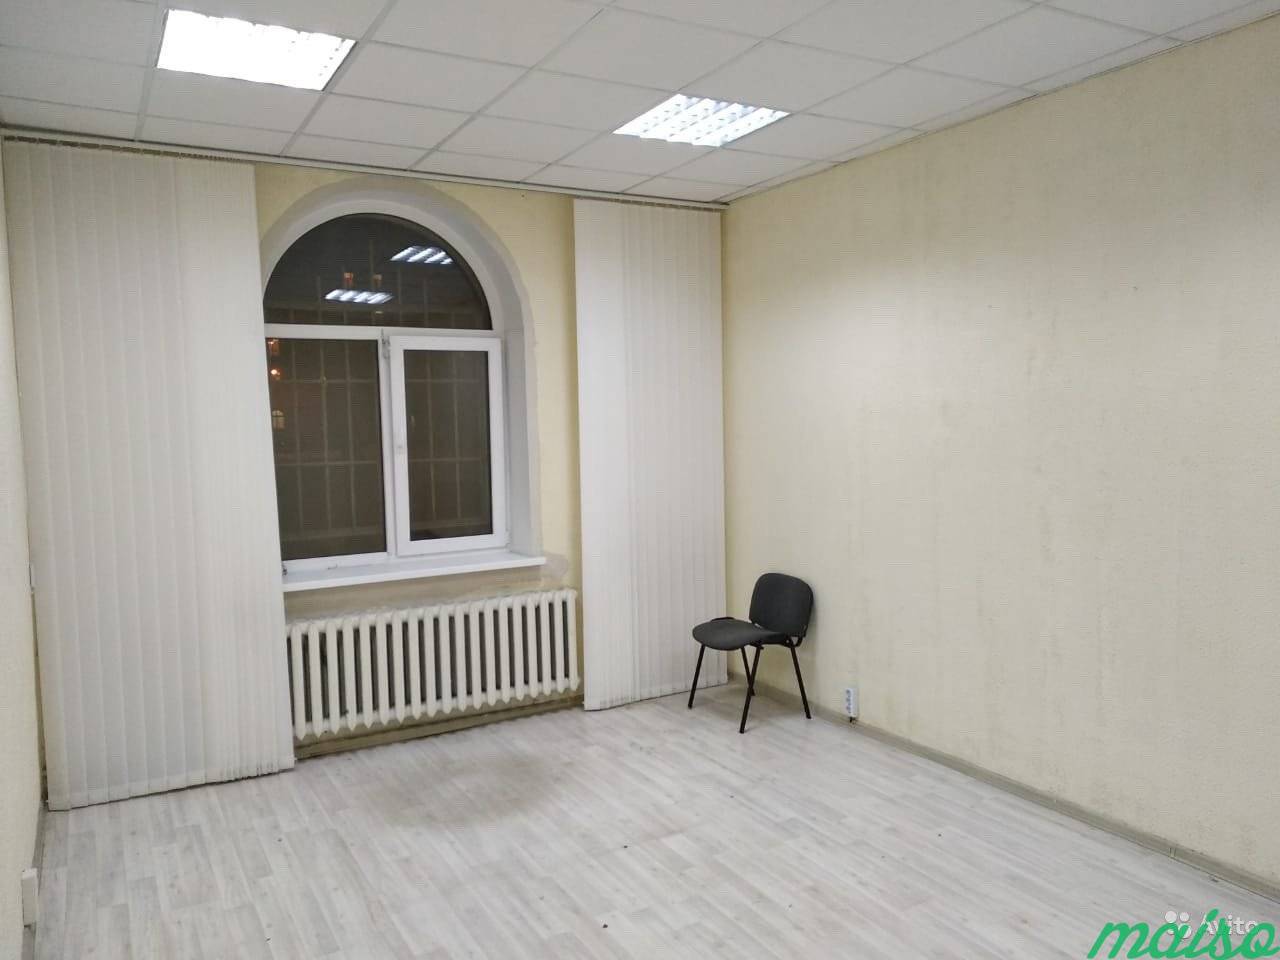 Сдам помещение под офис в Санкт-Петербурге. Фото 1